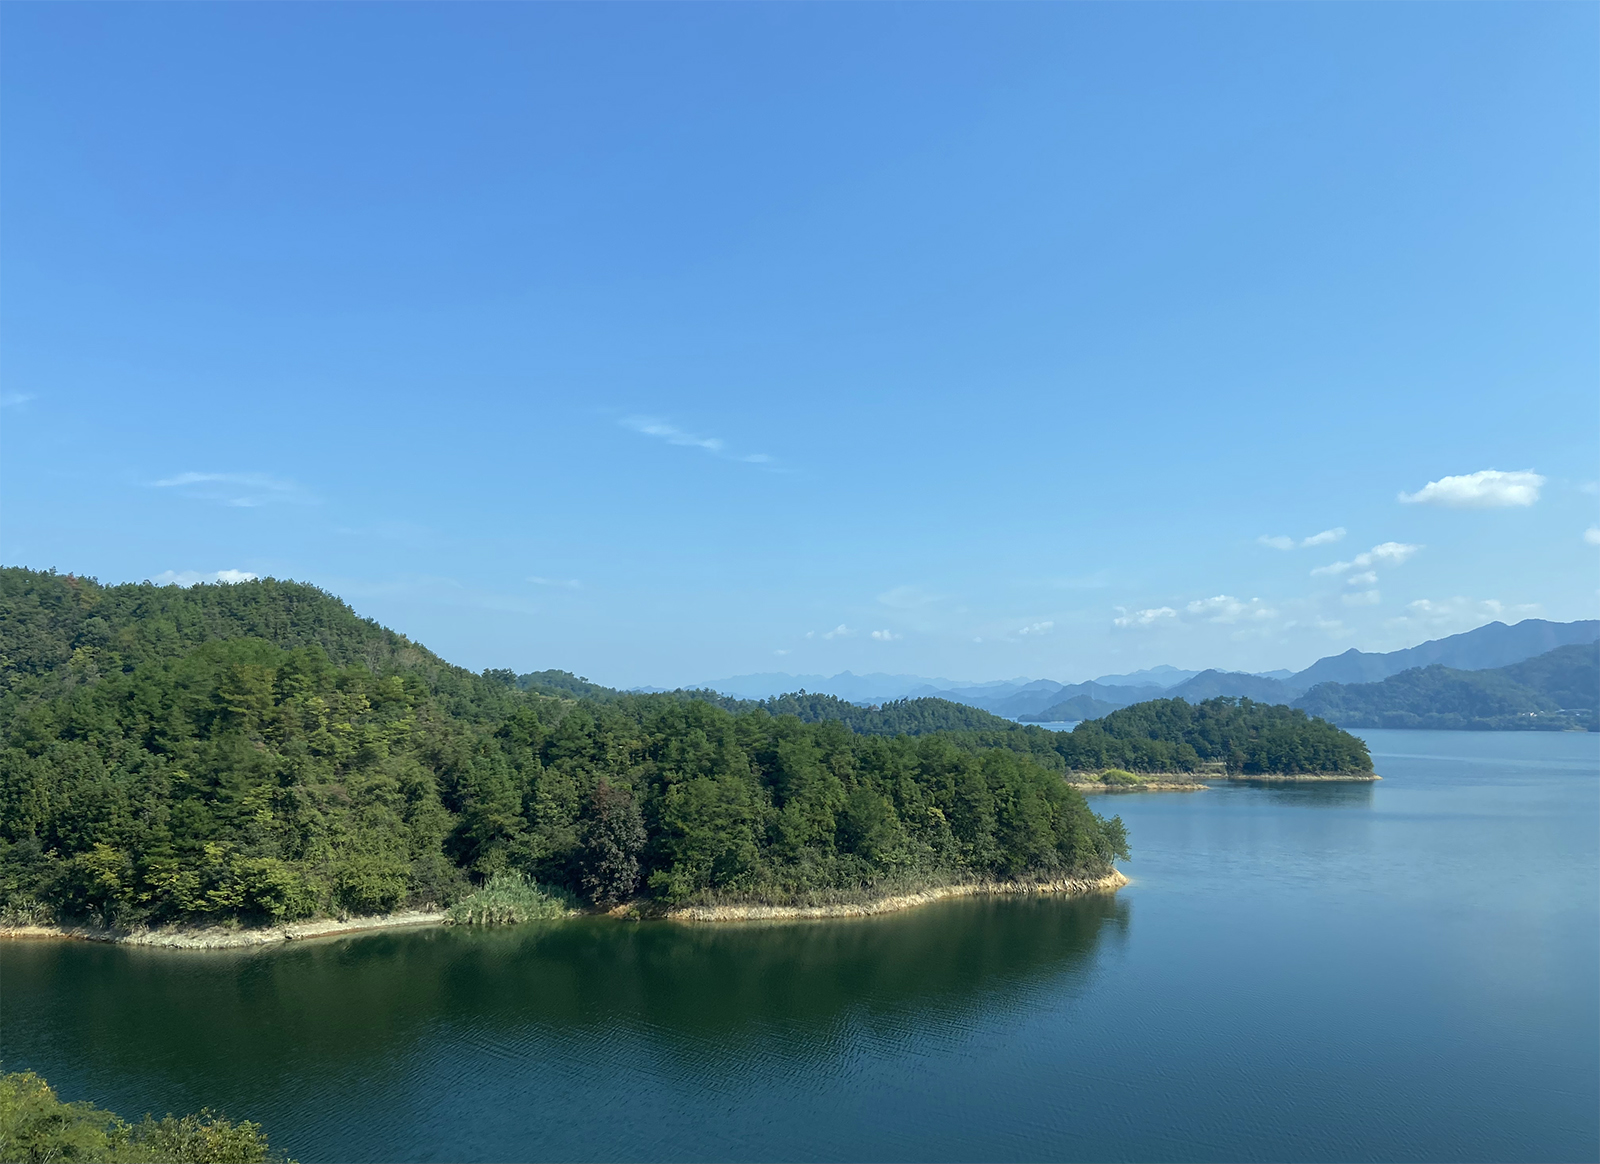 A view of Qiandao Lake in Chun'an County, Zhejiang Province. /CGTN